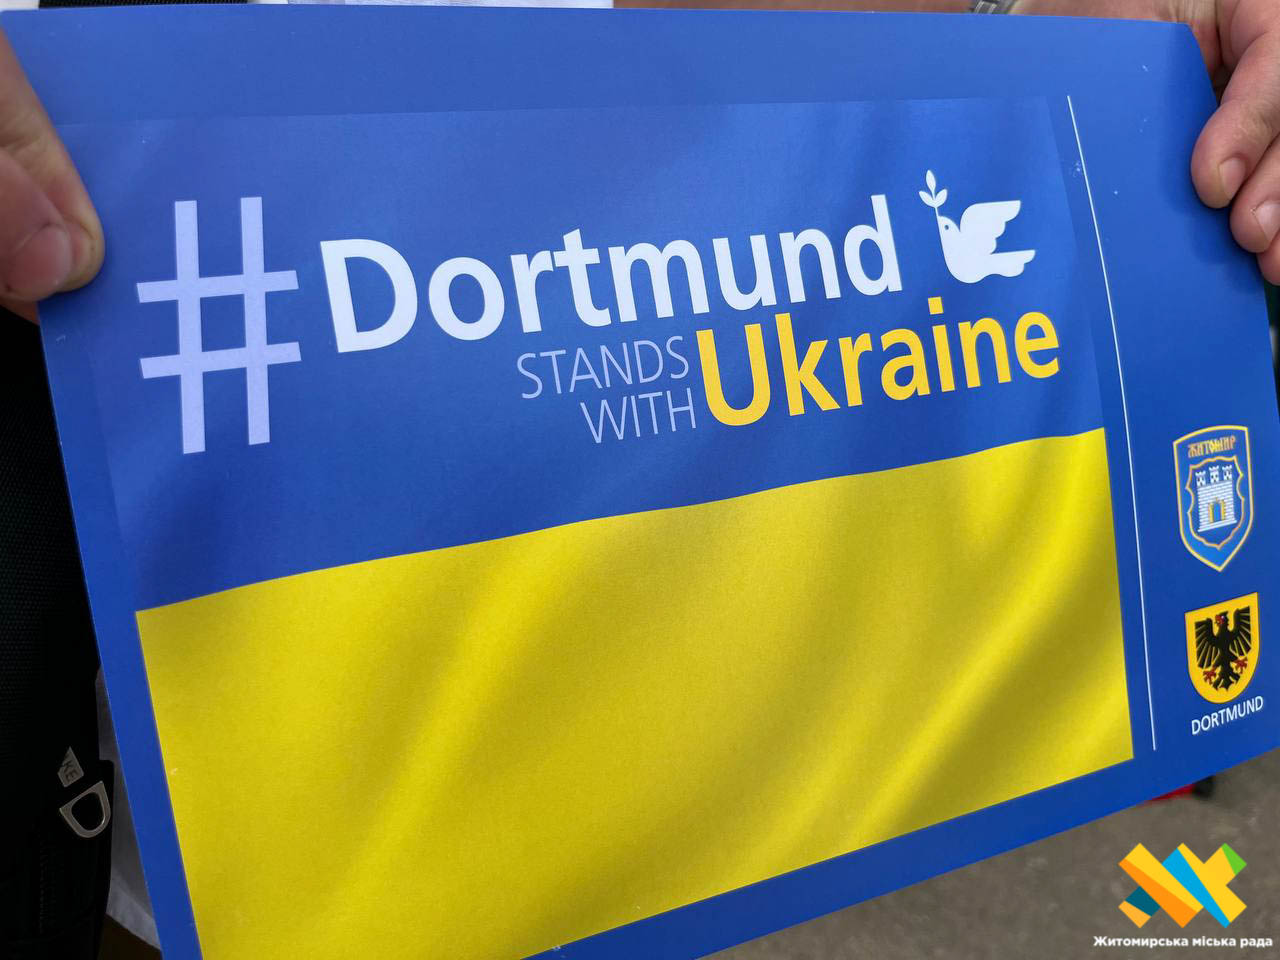 Підсумки візиту німецької делегації з Дортмунда